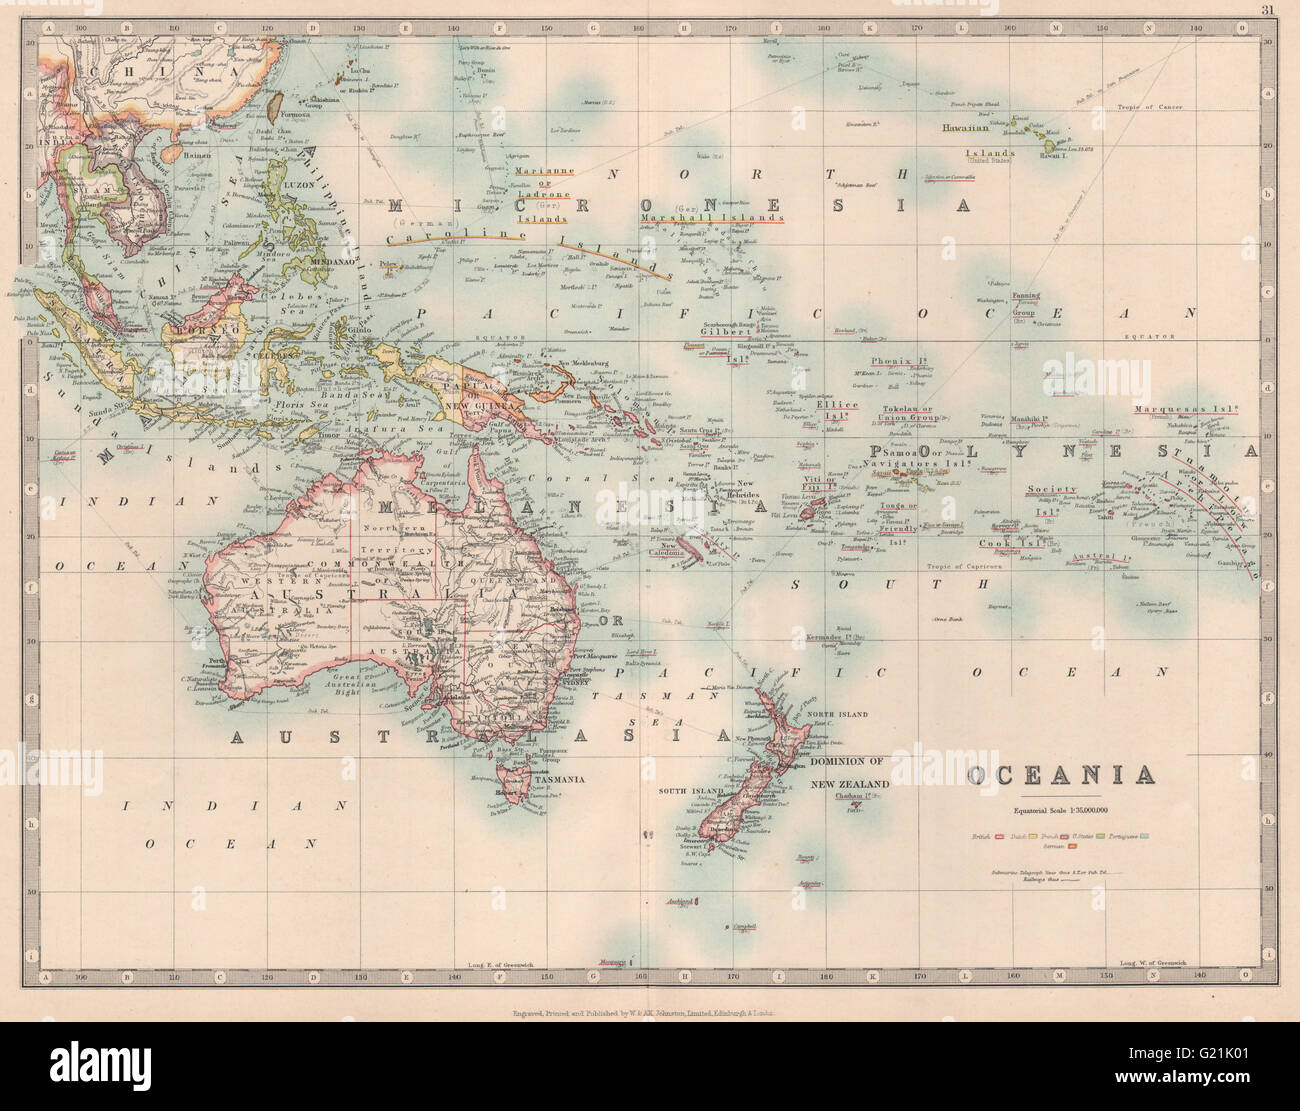 Océanie Australie Nouvelle-Zélande East Indies Polynésie Micronésie JOHNSTON 1912 map Banque D'Images